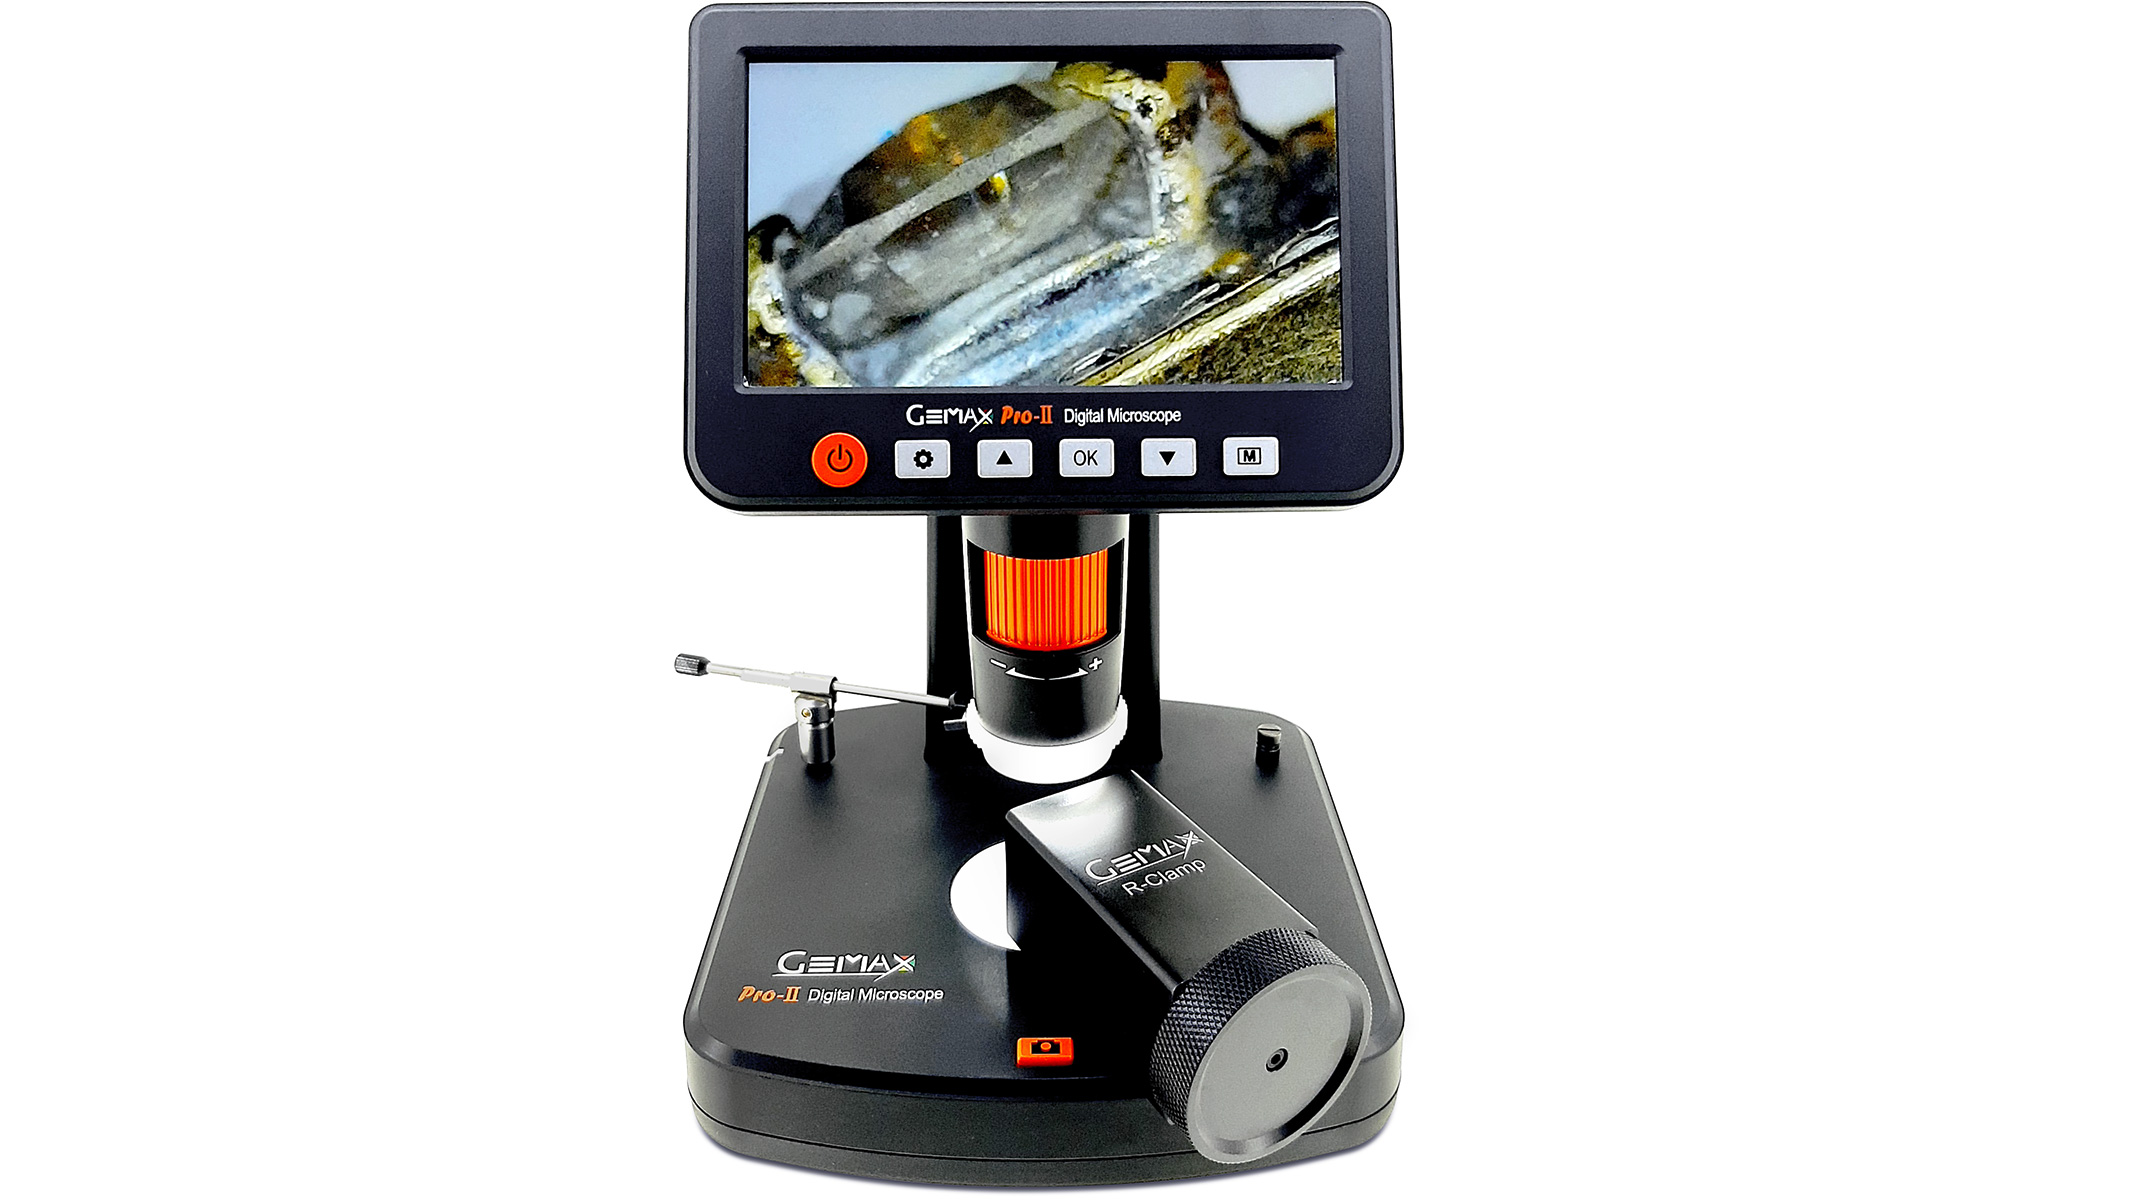 Gemax Pro-II Digital Mikroskop, inkl. Software, SD-Karte, Stecker für EU und UK